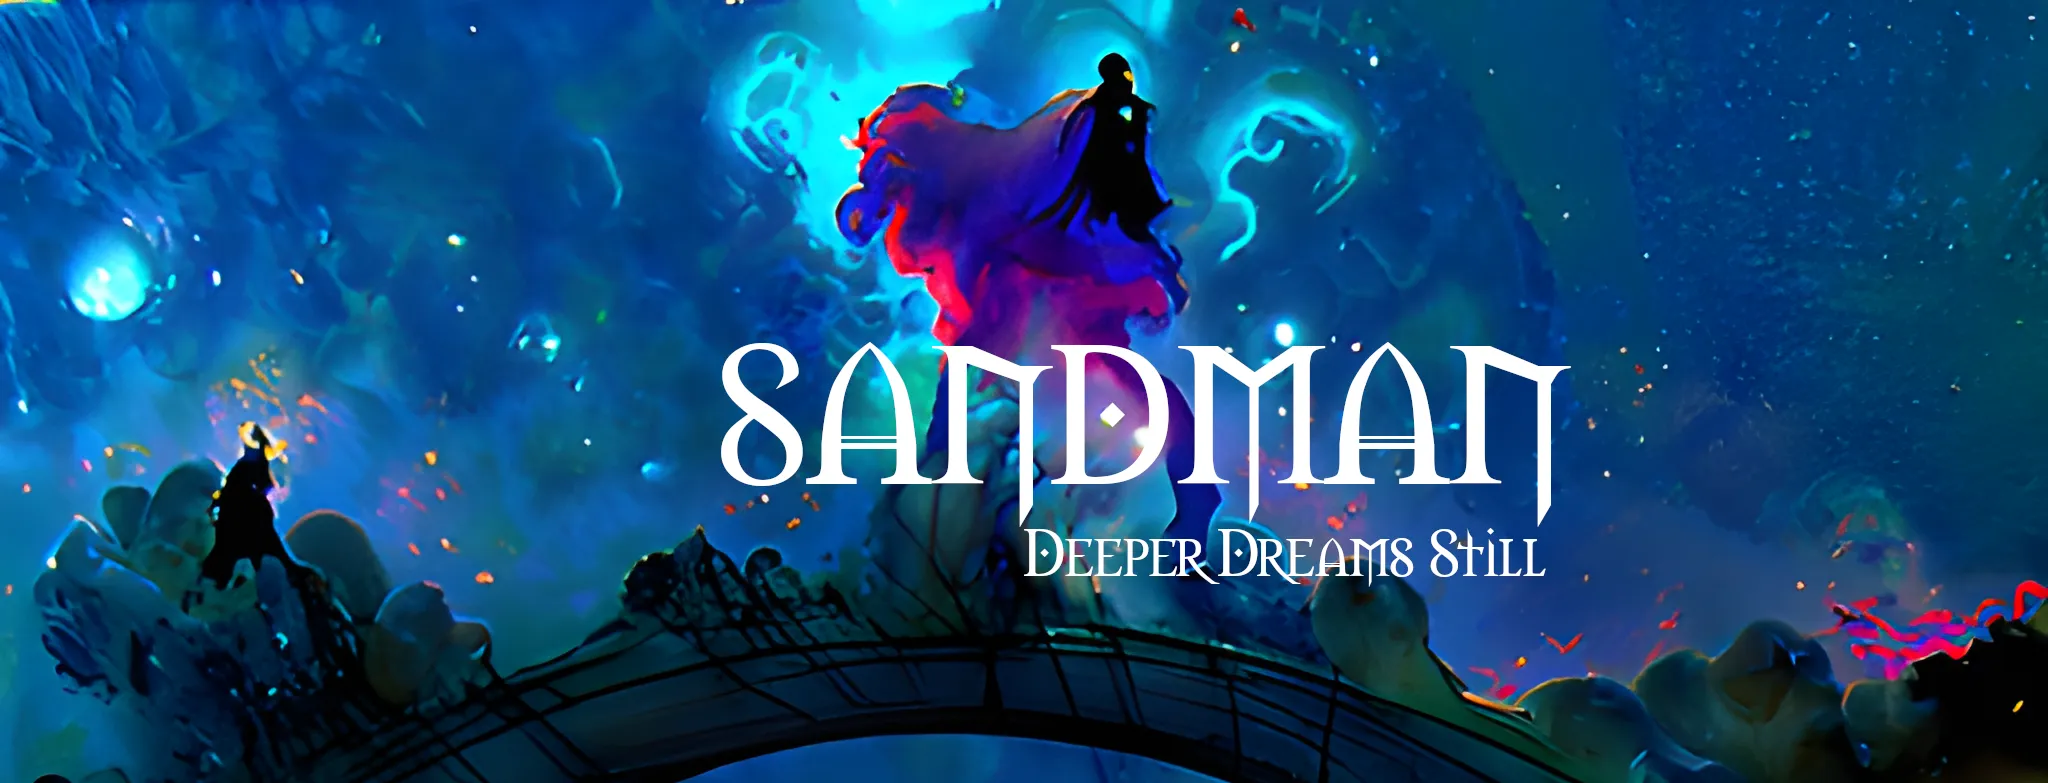 Sandman - Deeper Dreams Still